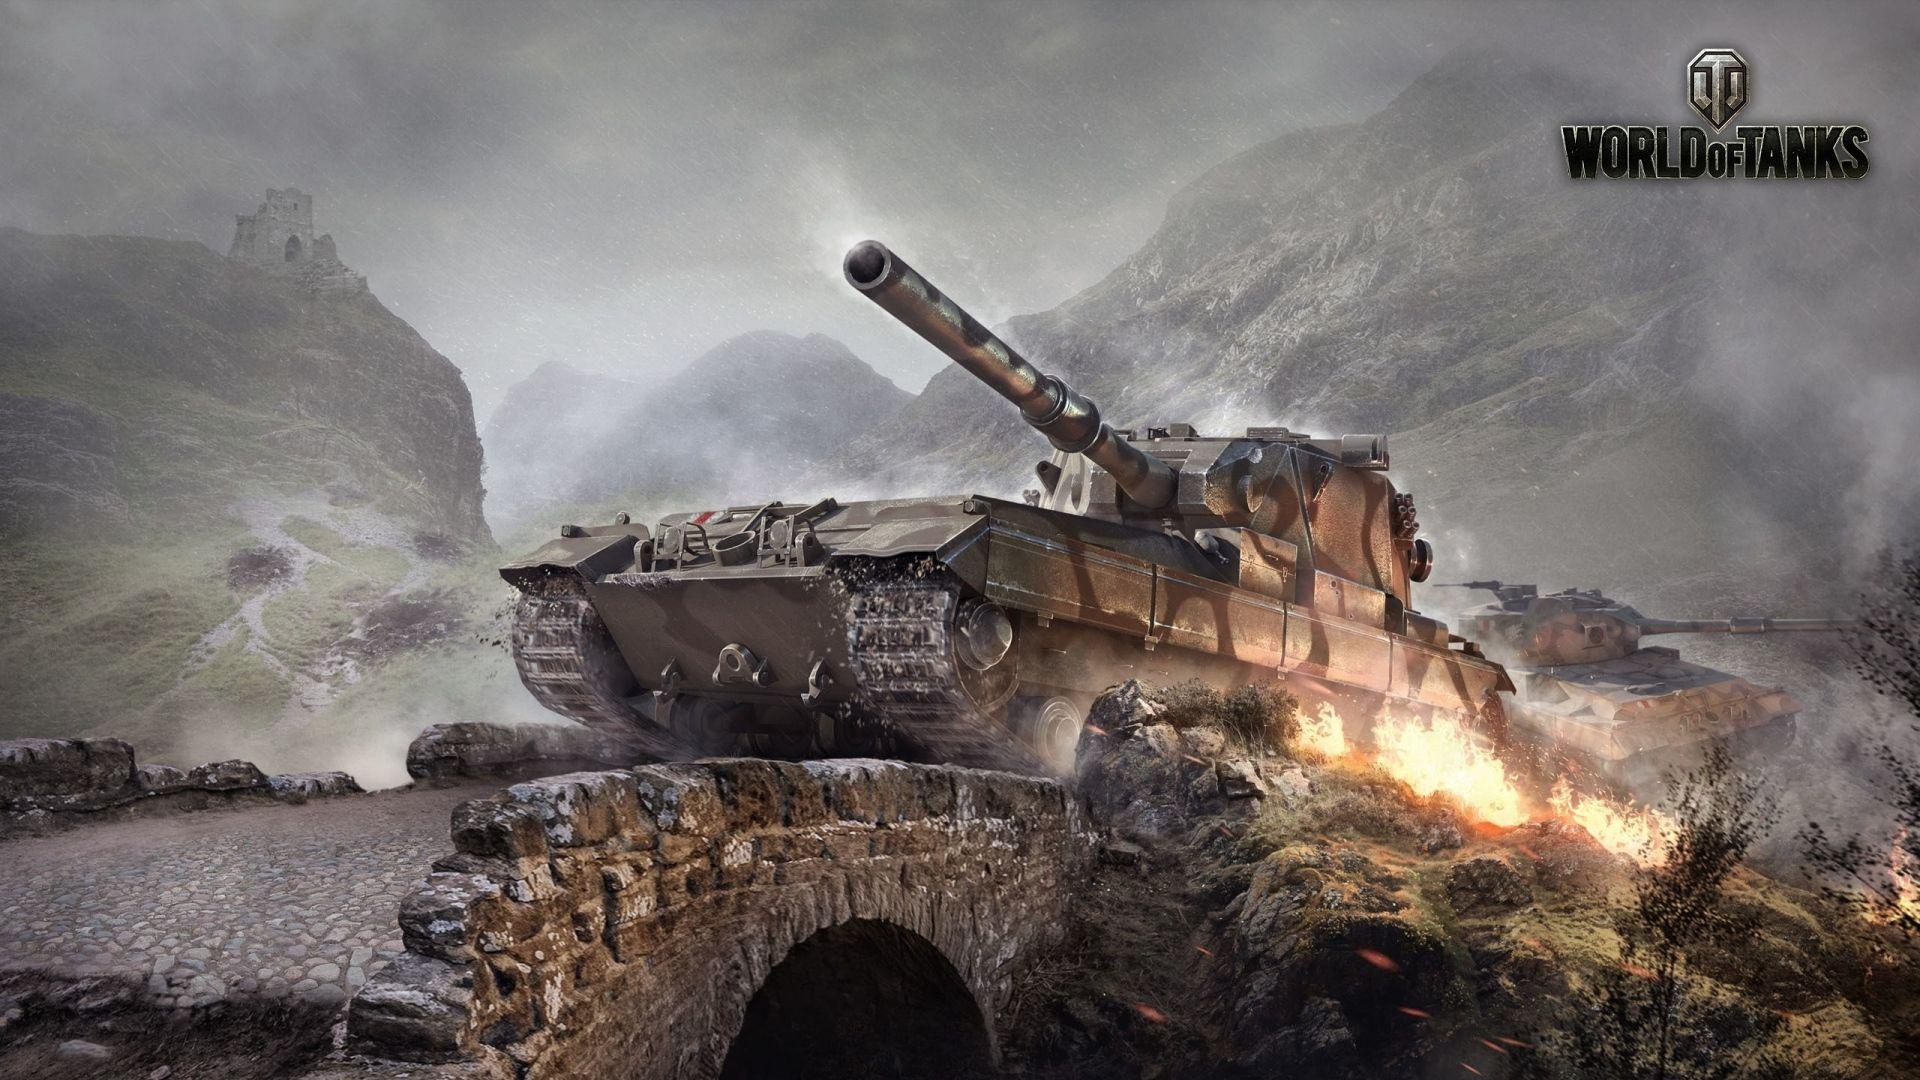 World Of Tanks HD Wallpaper Photo Pics For Mobile Full Hdworld